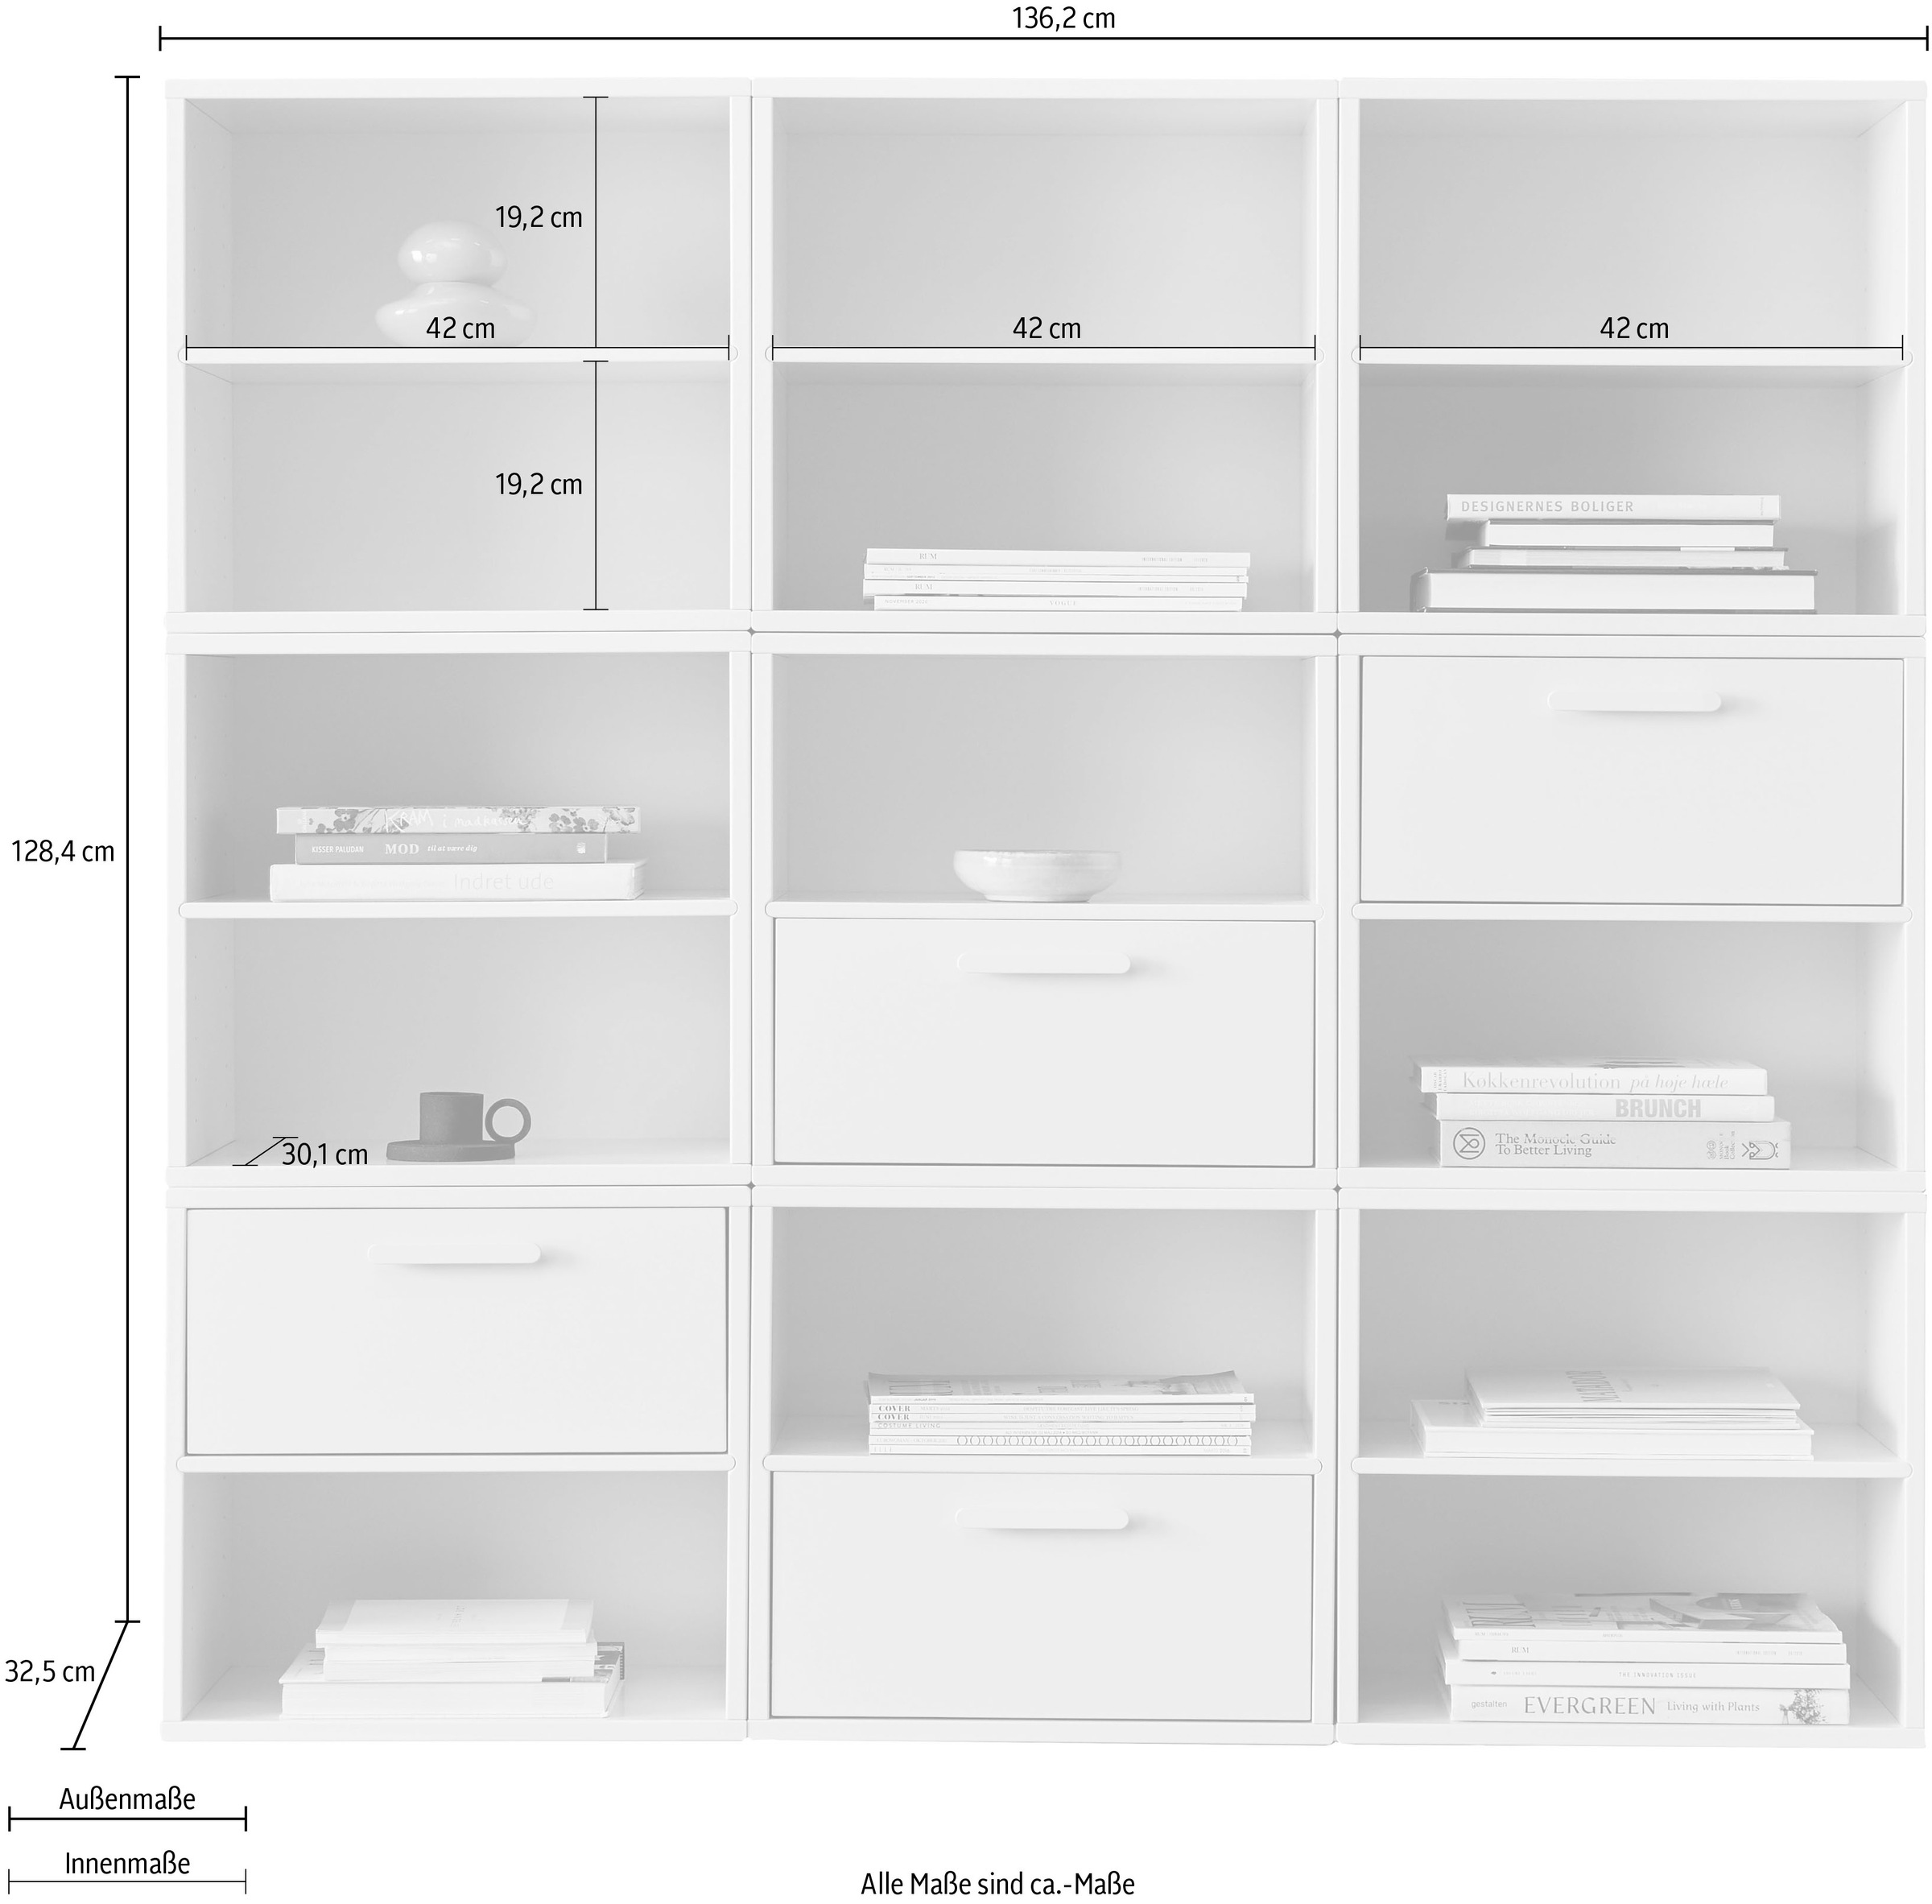 Hammel Furniture Bücherregal »Keep by Hammel«, Kombination aus 9 Modulen, mit 4 Schubladen, Breite 136,2 cm